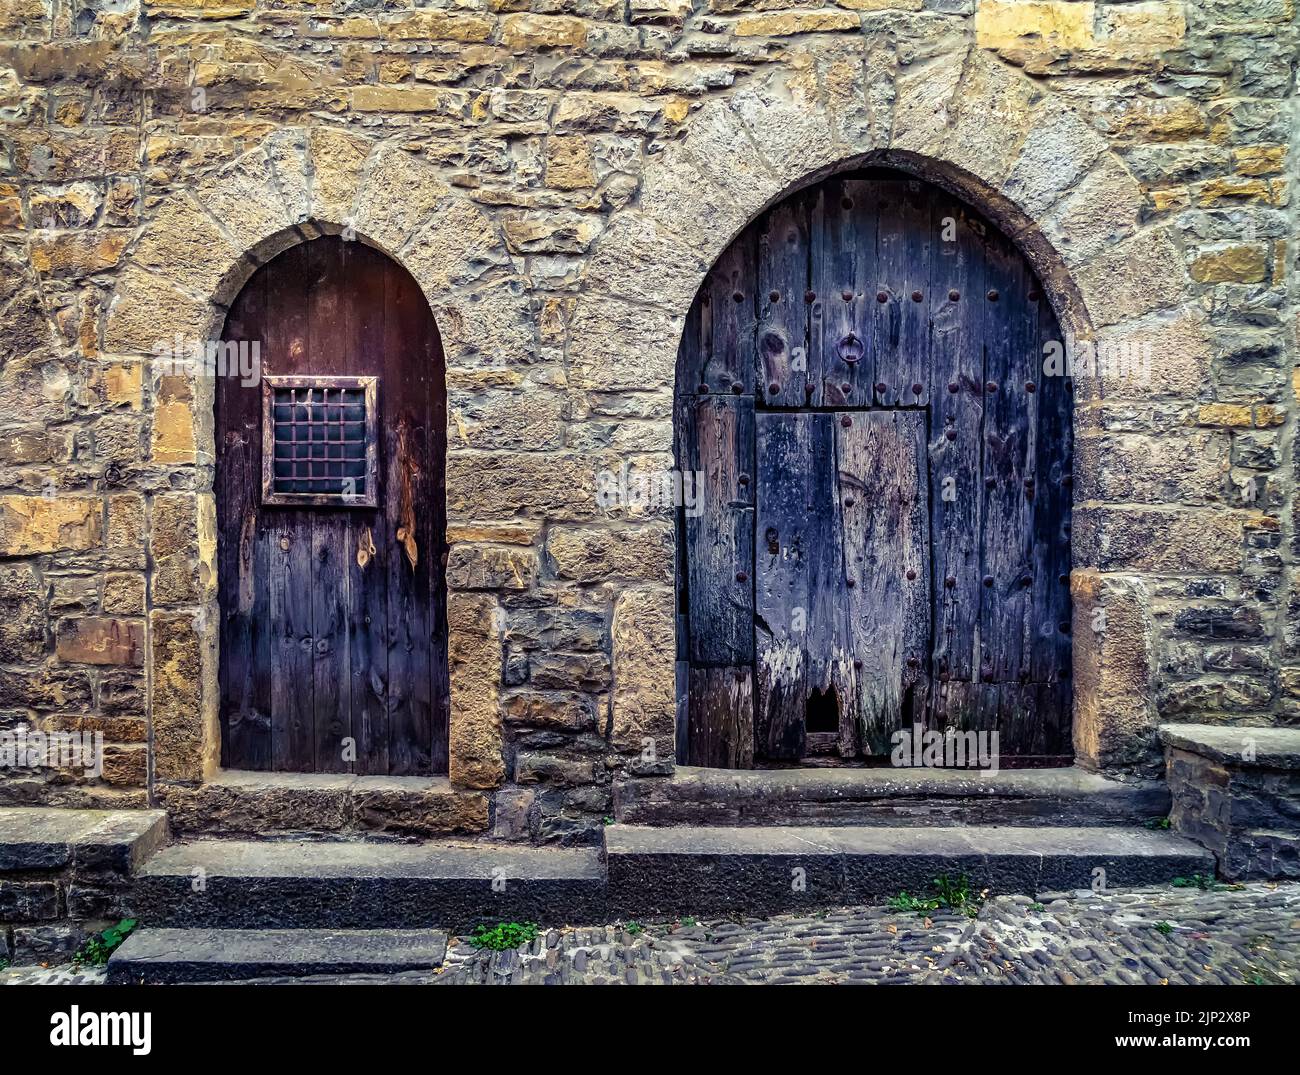 Straße einer alten mittelalterlichen Stadt mit Steinhäusern und Kopfsteinpflasterböden, Straßenlampen und einer Atmosphäre vergangener Zeiten. Ainsa, Spanien. Stockfoto